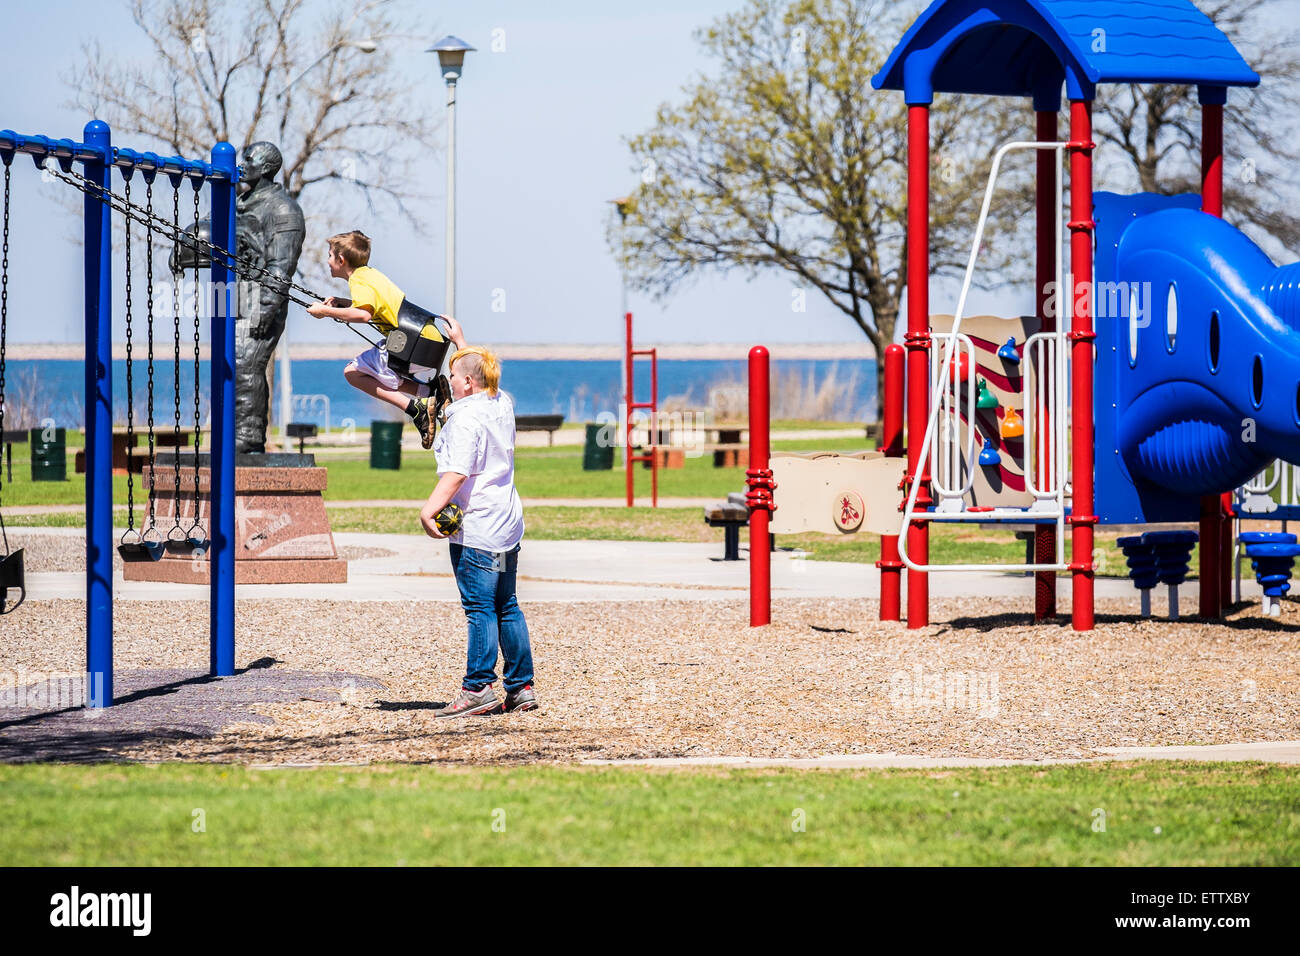 Ein Teenager mit einem funky Haarschnitt schwingt einen jüngeren Jungen auf einem öffentlichen Spielplatz. Oklahoma City, Oklahoma, USA. Stockfoto